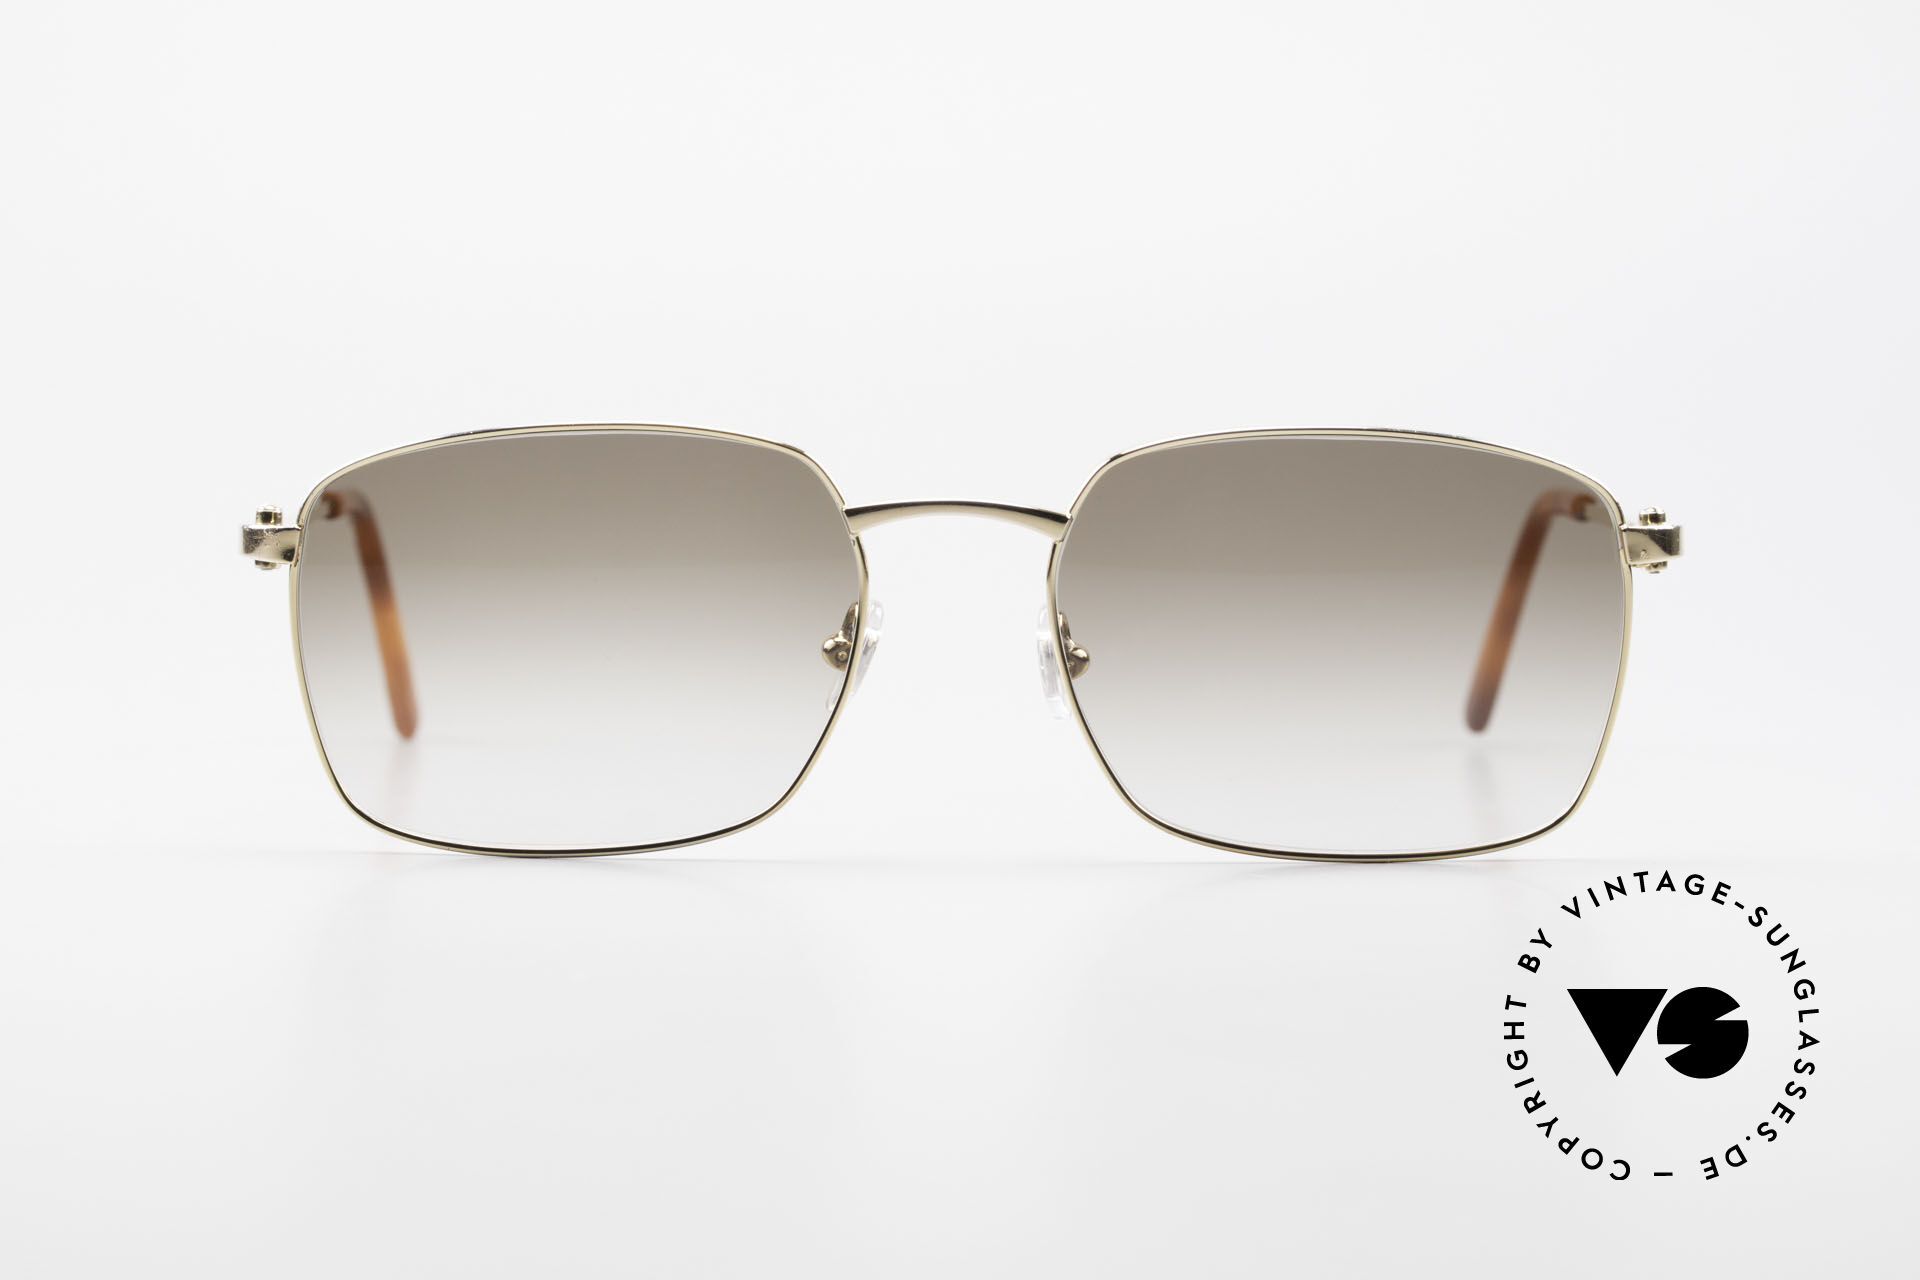 Classic Luxury Men Sunglasses Glamour Fashion Brand Sun Glasses For Women  Mirrored Retro Vintage Square Designer